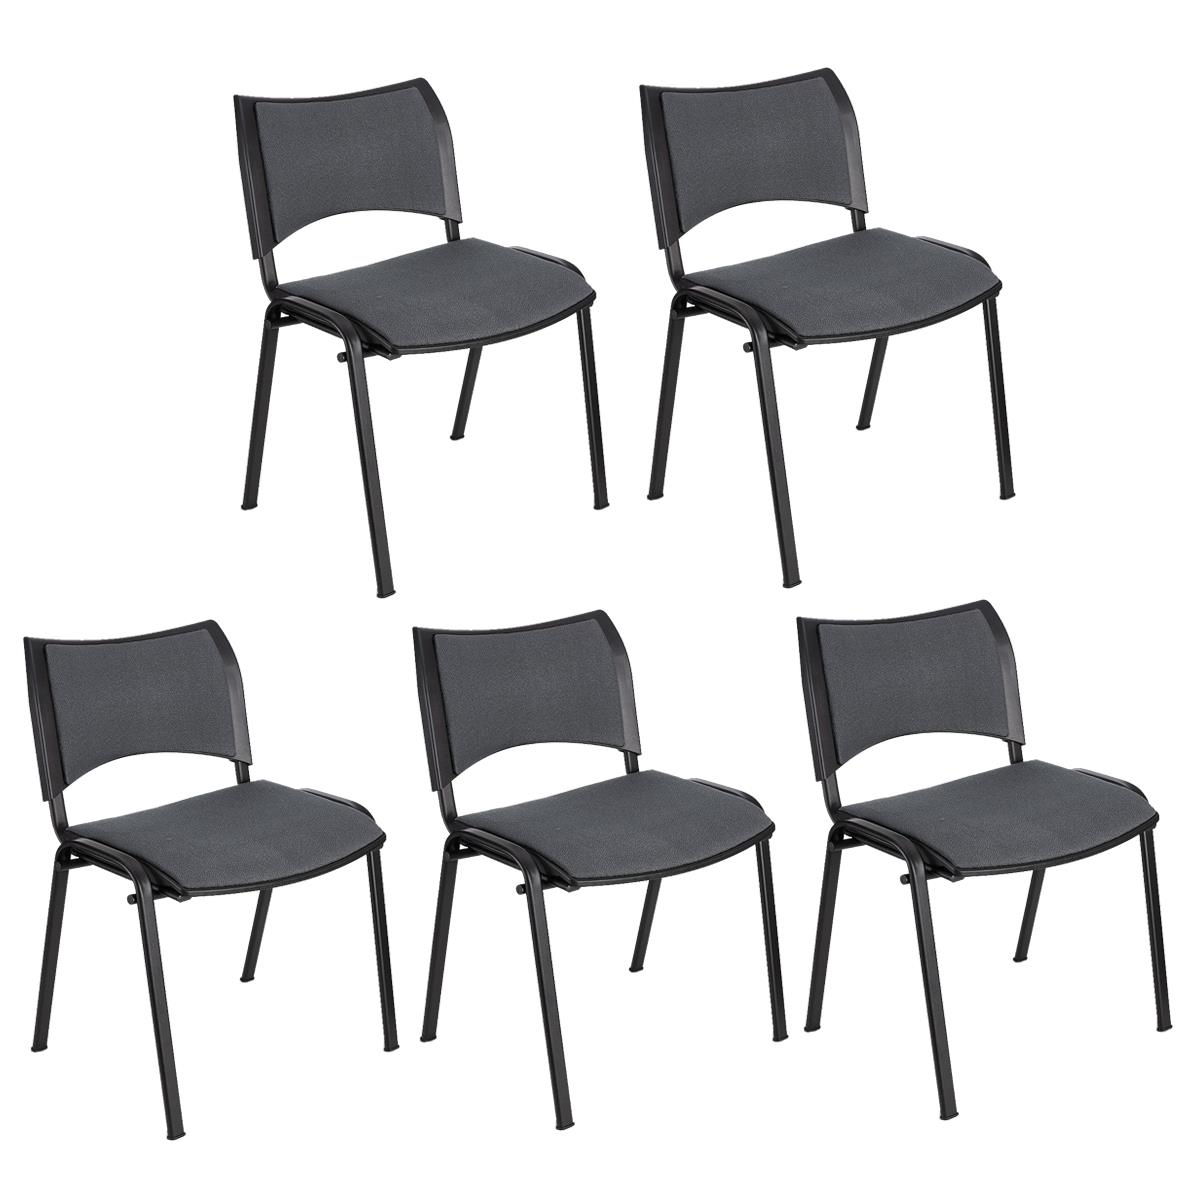 Lote 5 Cadeiras de Visita ROMEL, Prática e Empilhável, Pernas Pretas, Em Pano, Cinzento